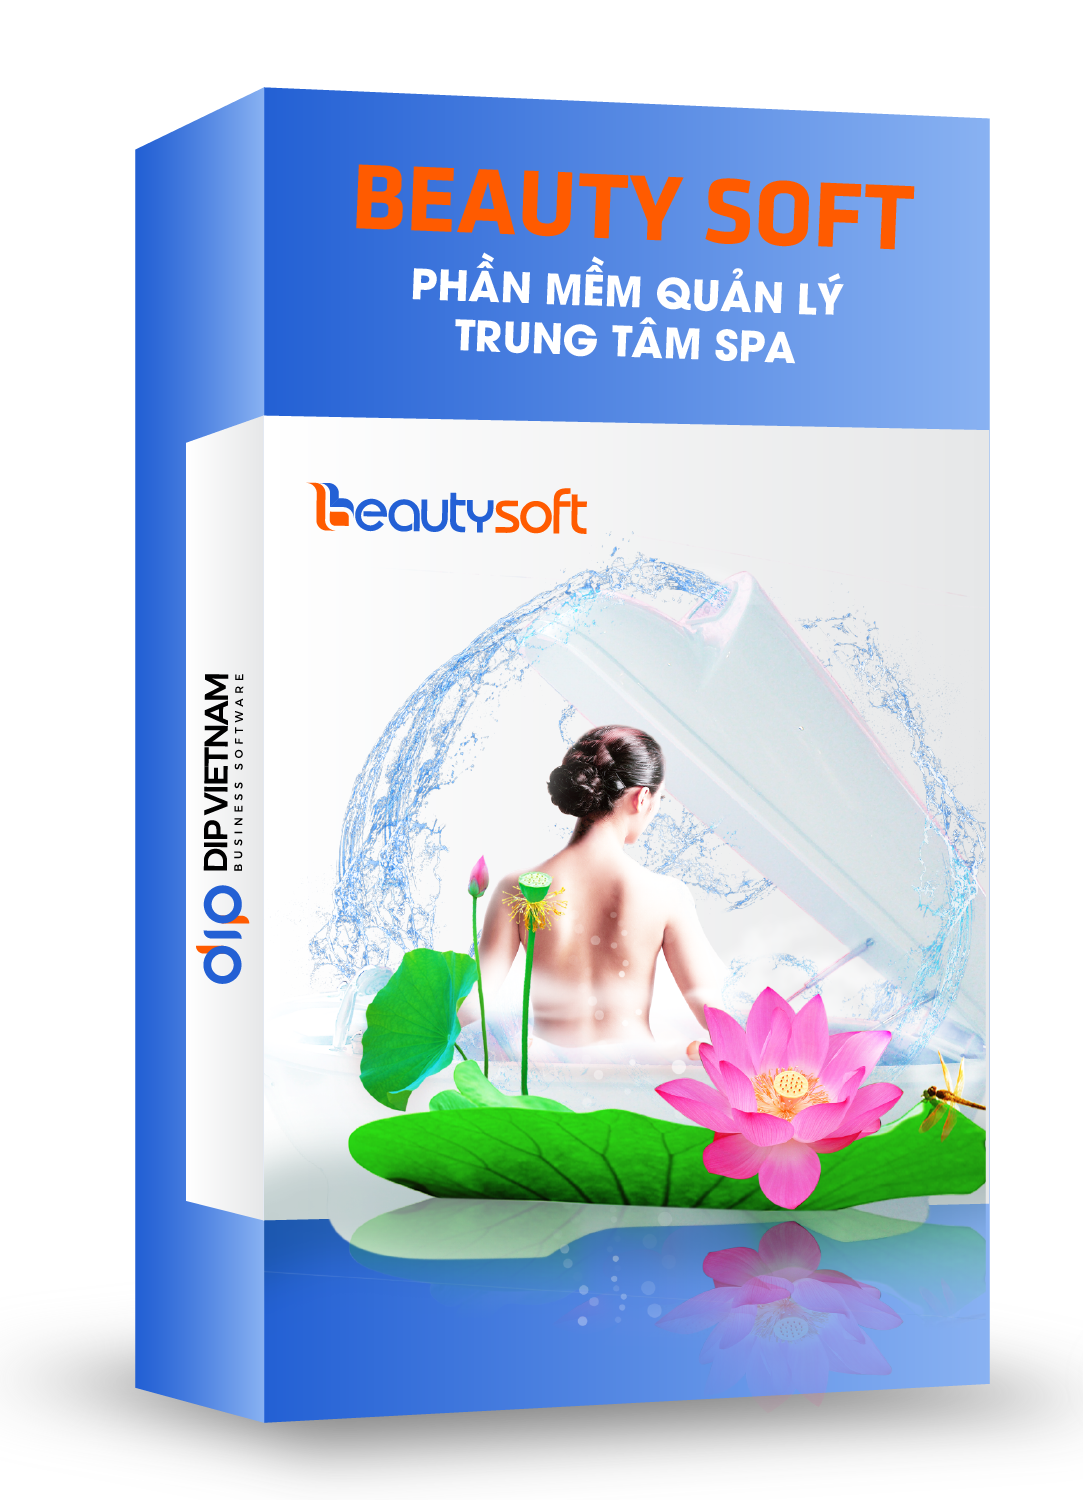 Phần mềm quản lý trung tâm spa Beauty Soft